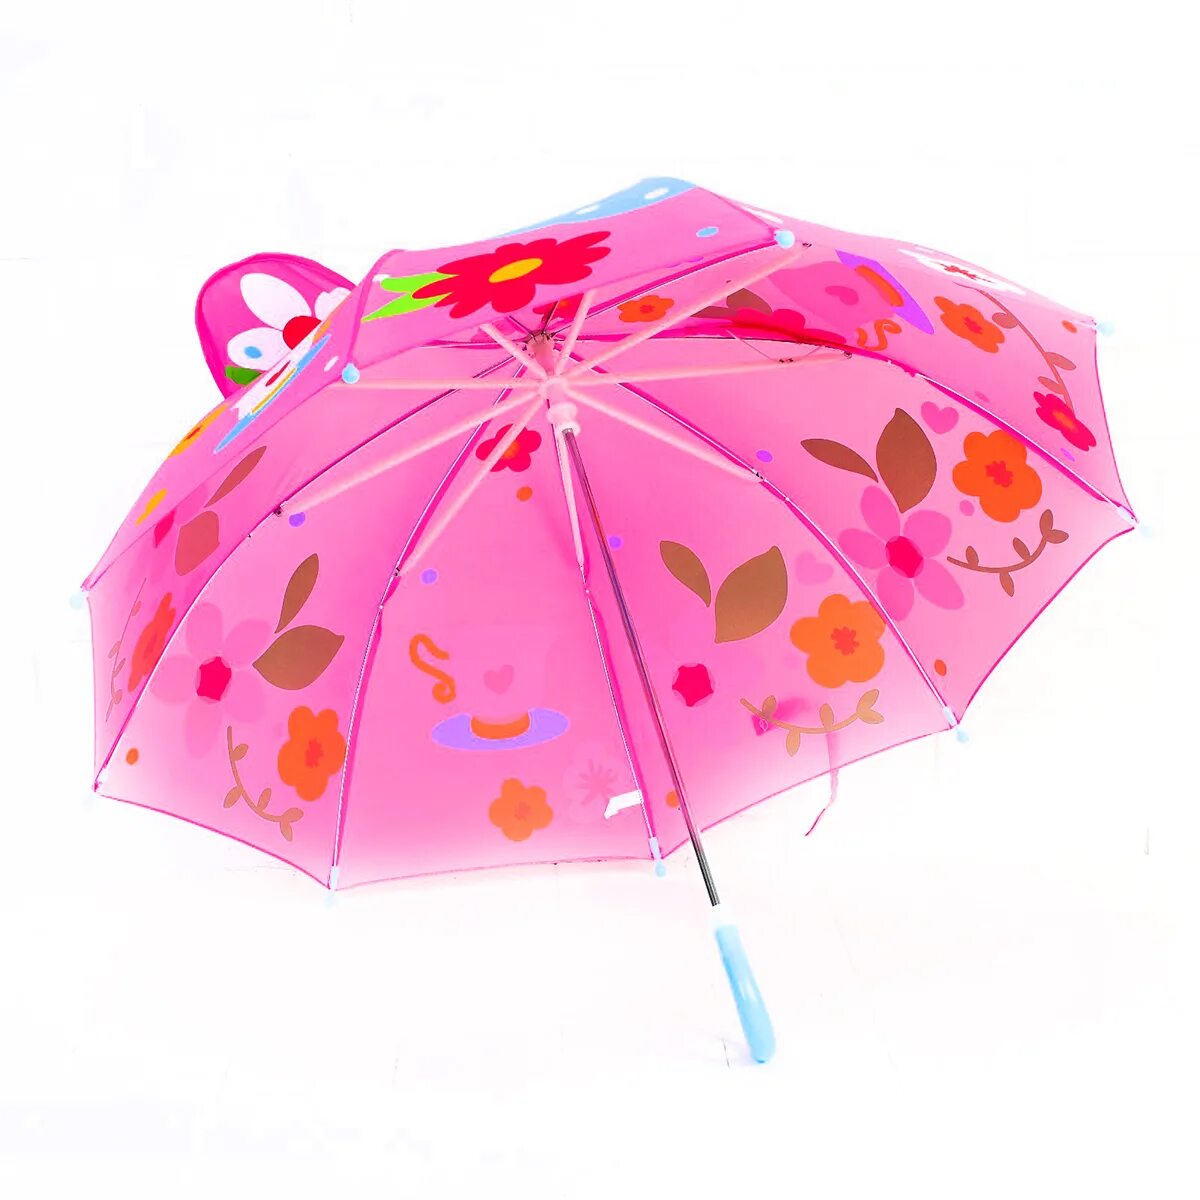 Детские зонты. Зонтик для детей. Детский зонтик для девочки. Детский зонт красивый. Зонтик надо